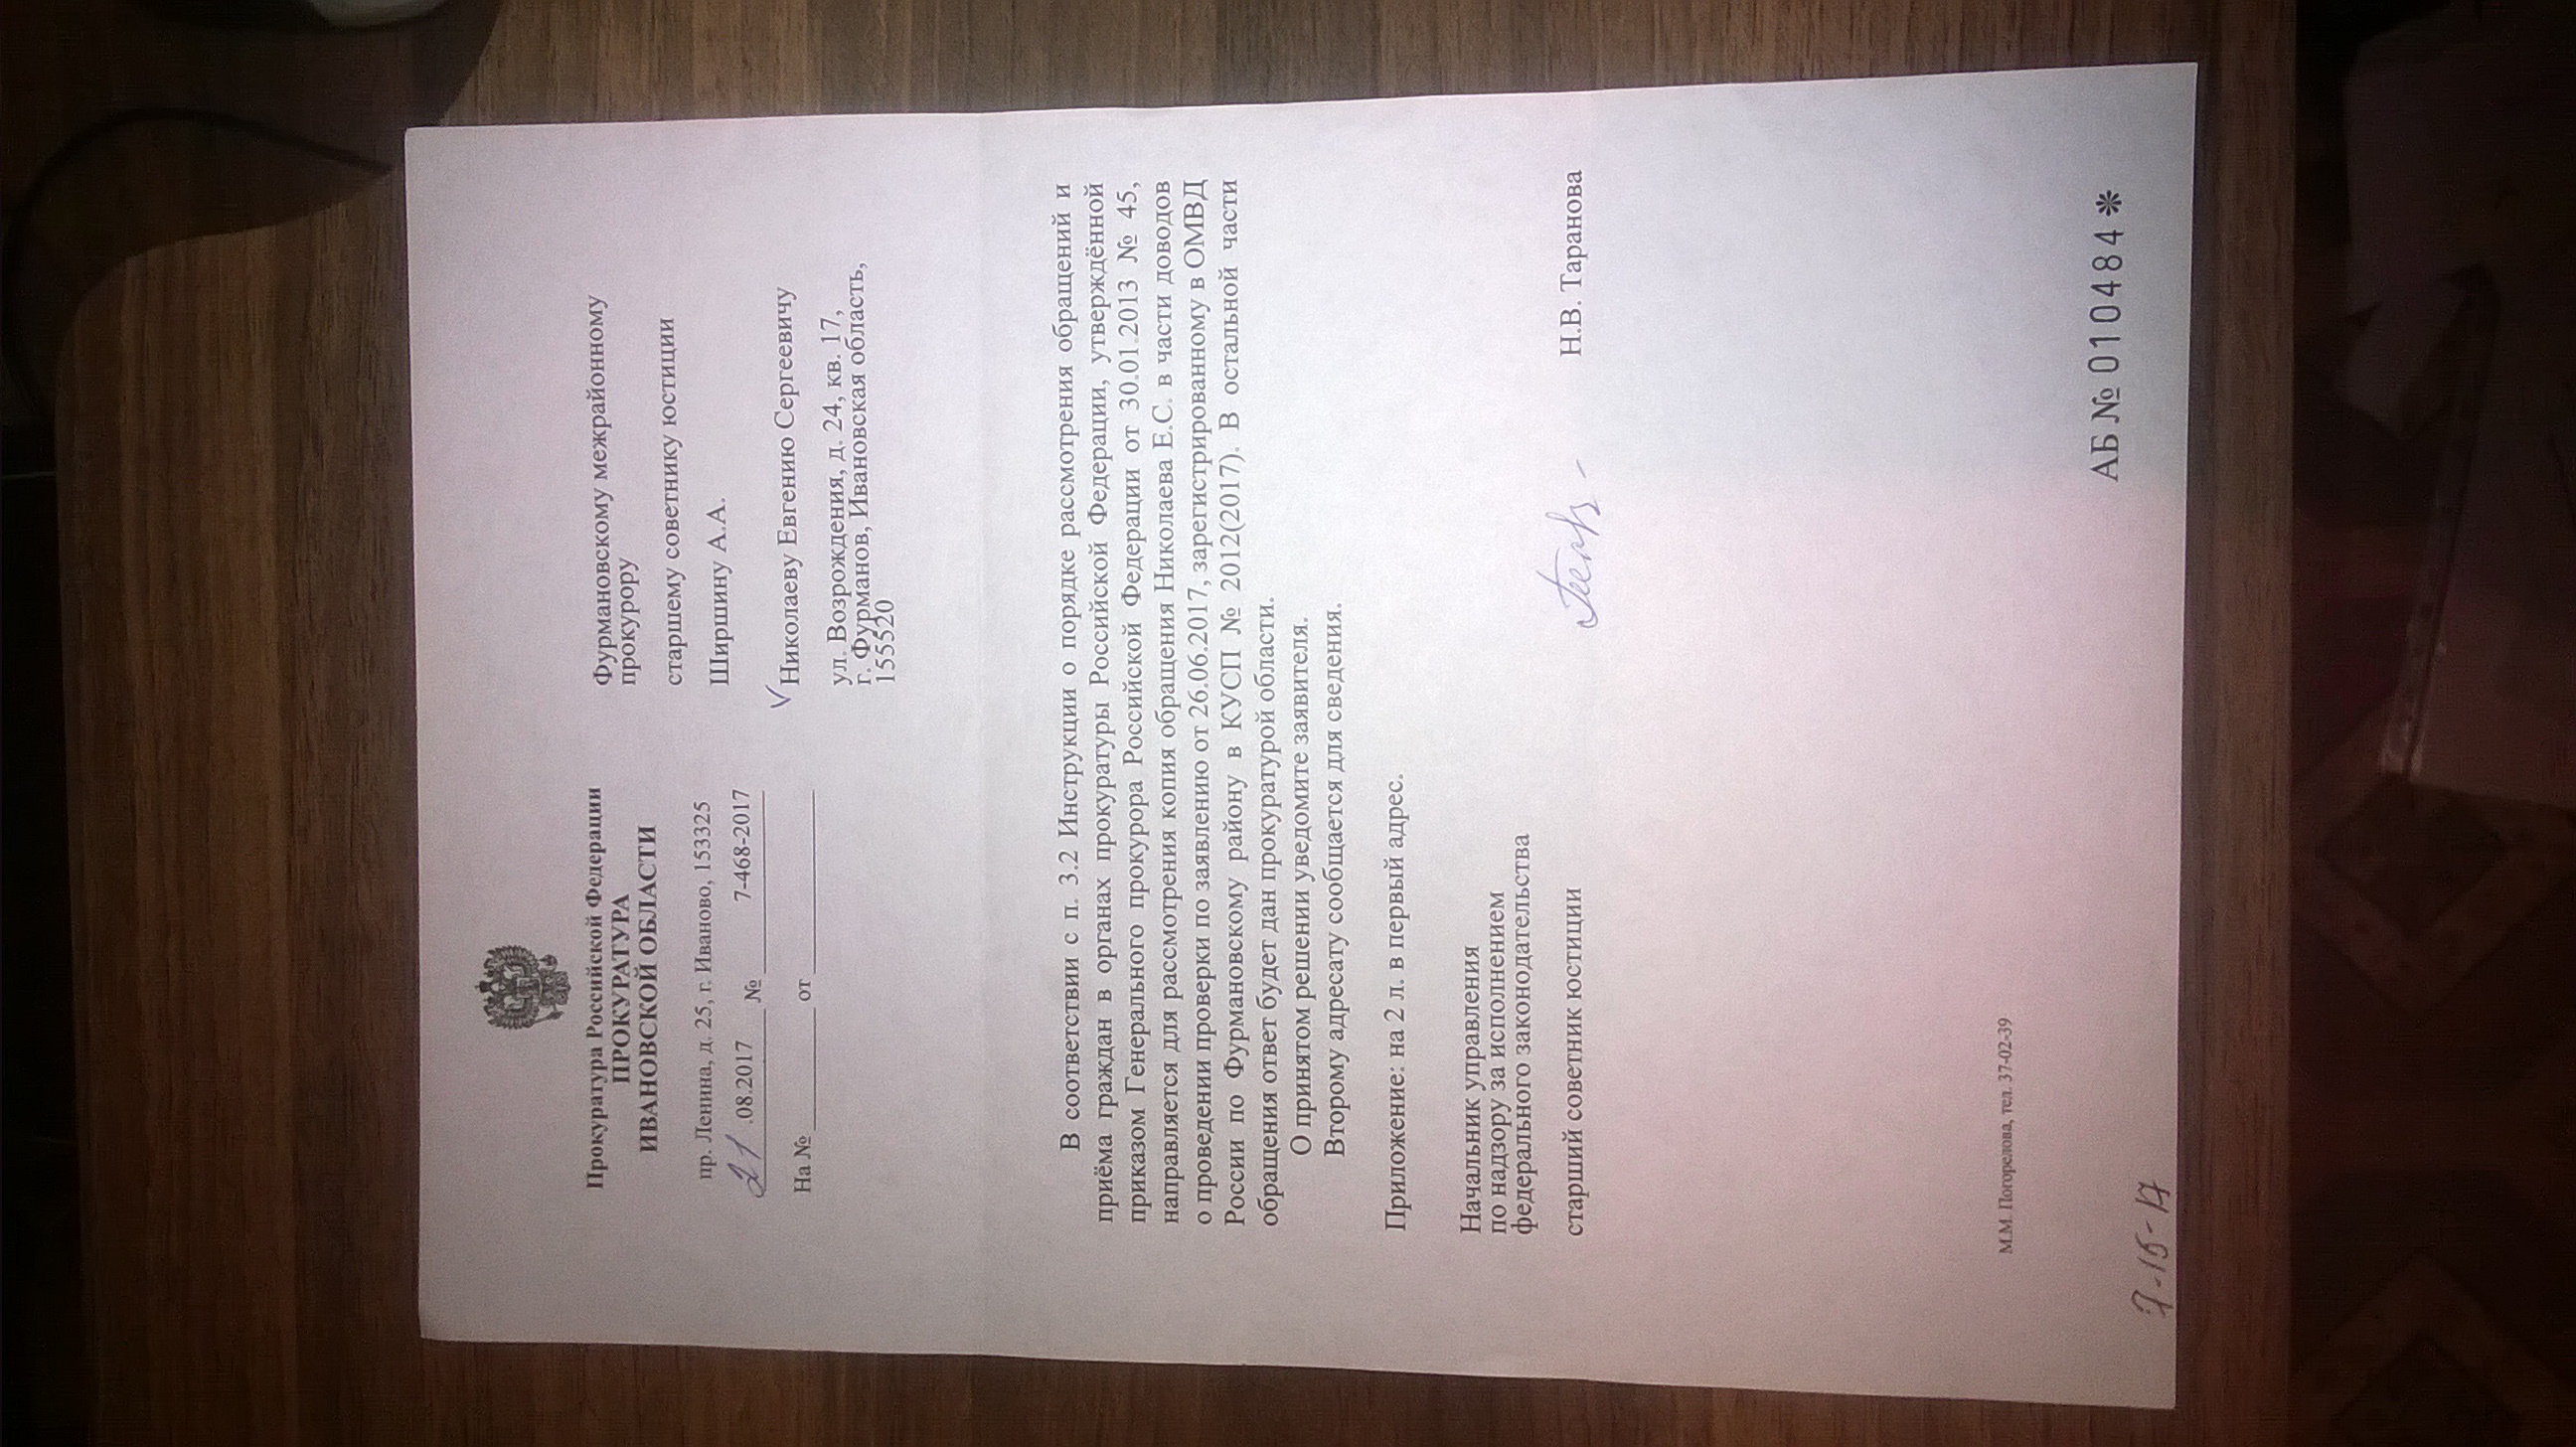 Ответ прокуратуры Ивановской области(ID документа 261) (Дата документа 21.08.2017) Страница 1